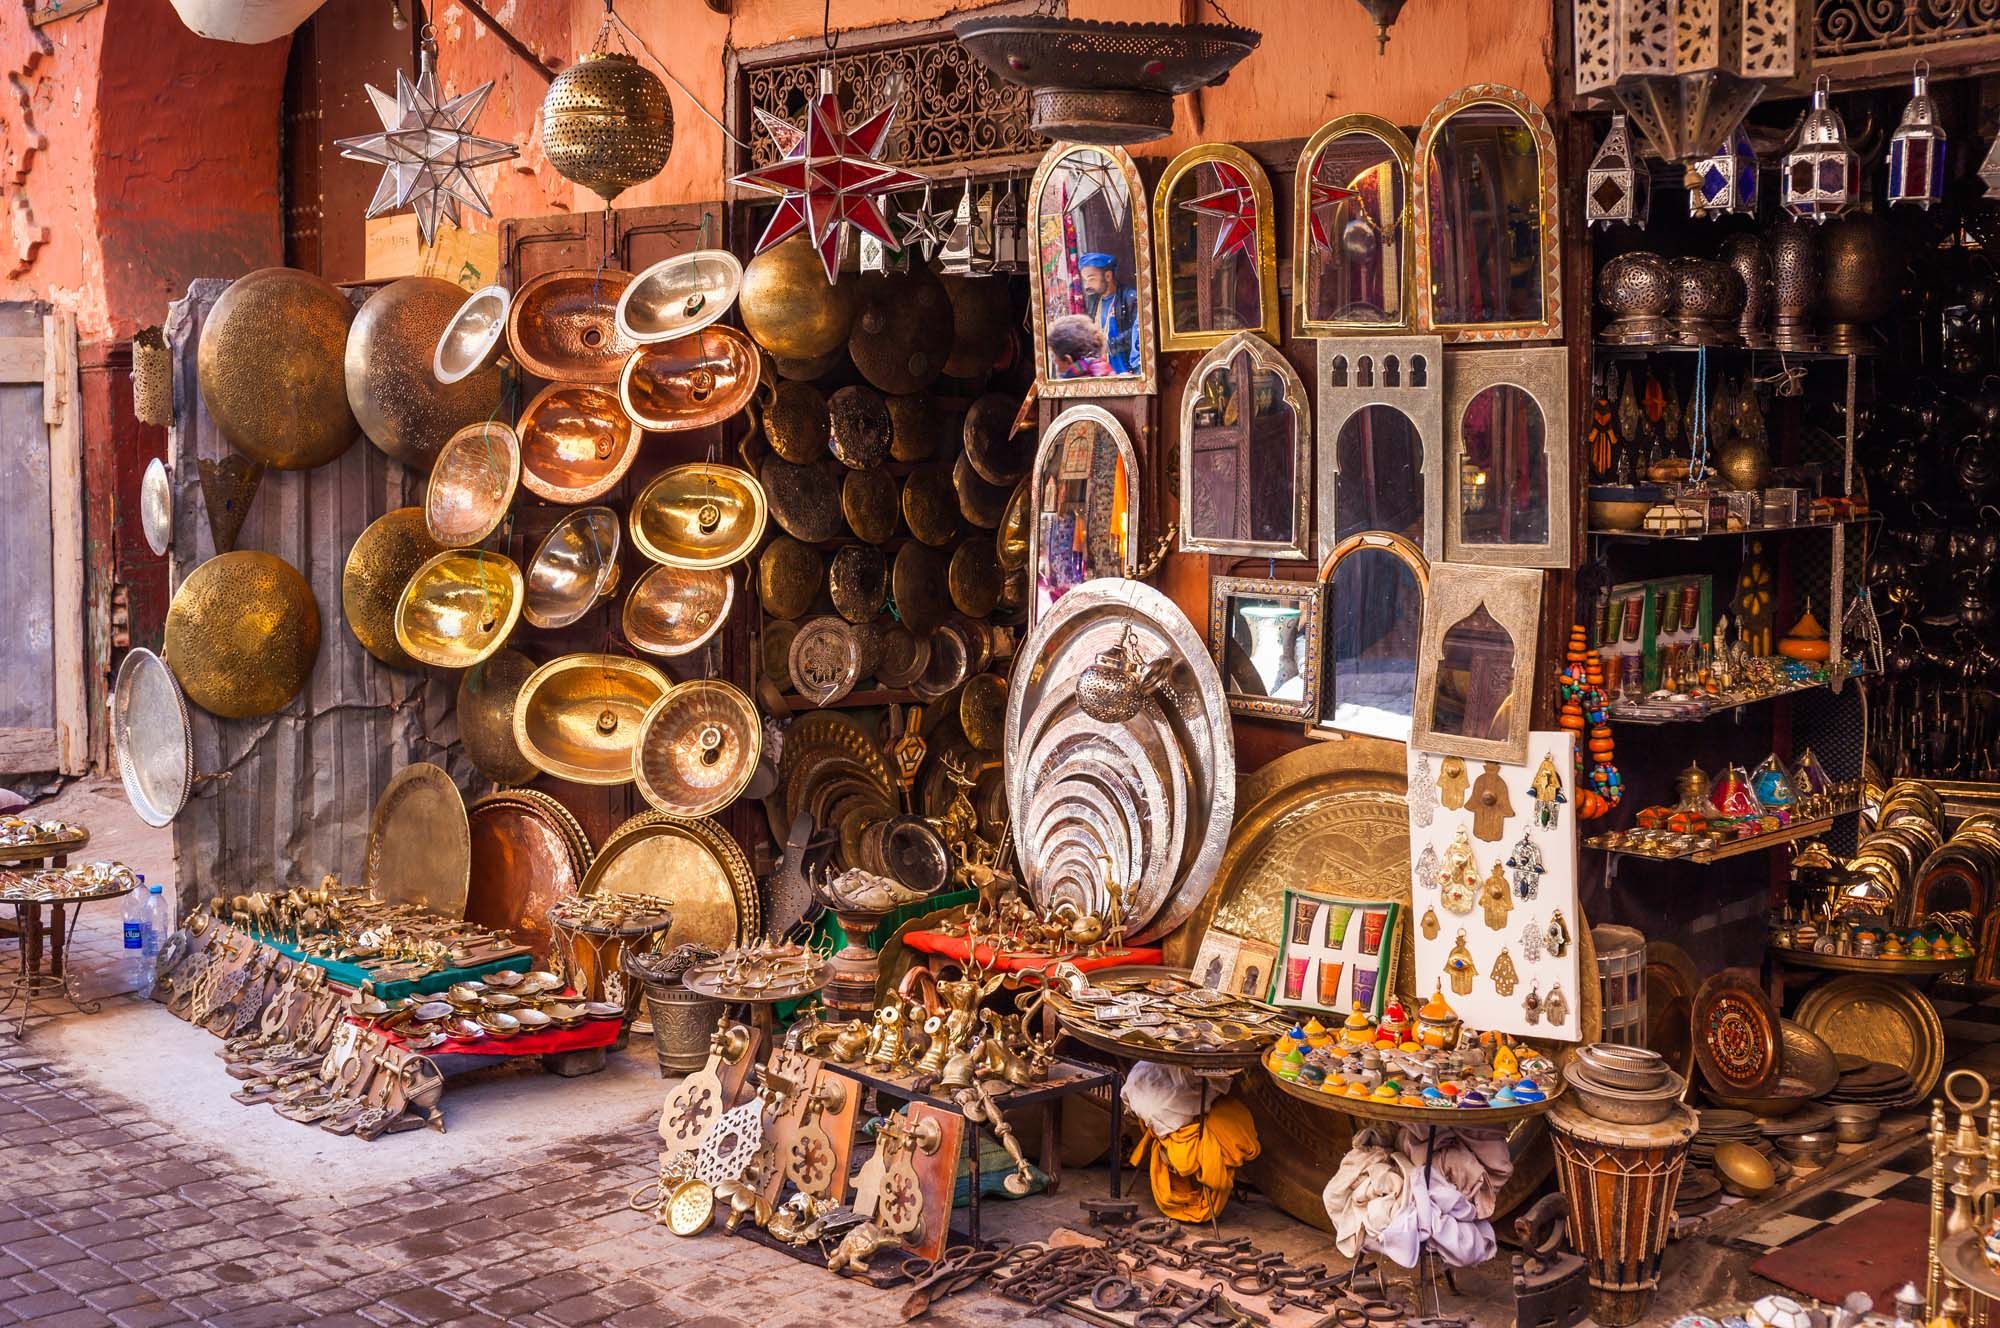 Souk in Marrakesh, Morocco © Shutterstock